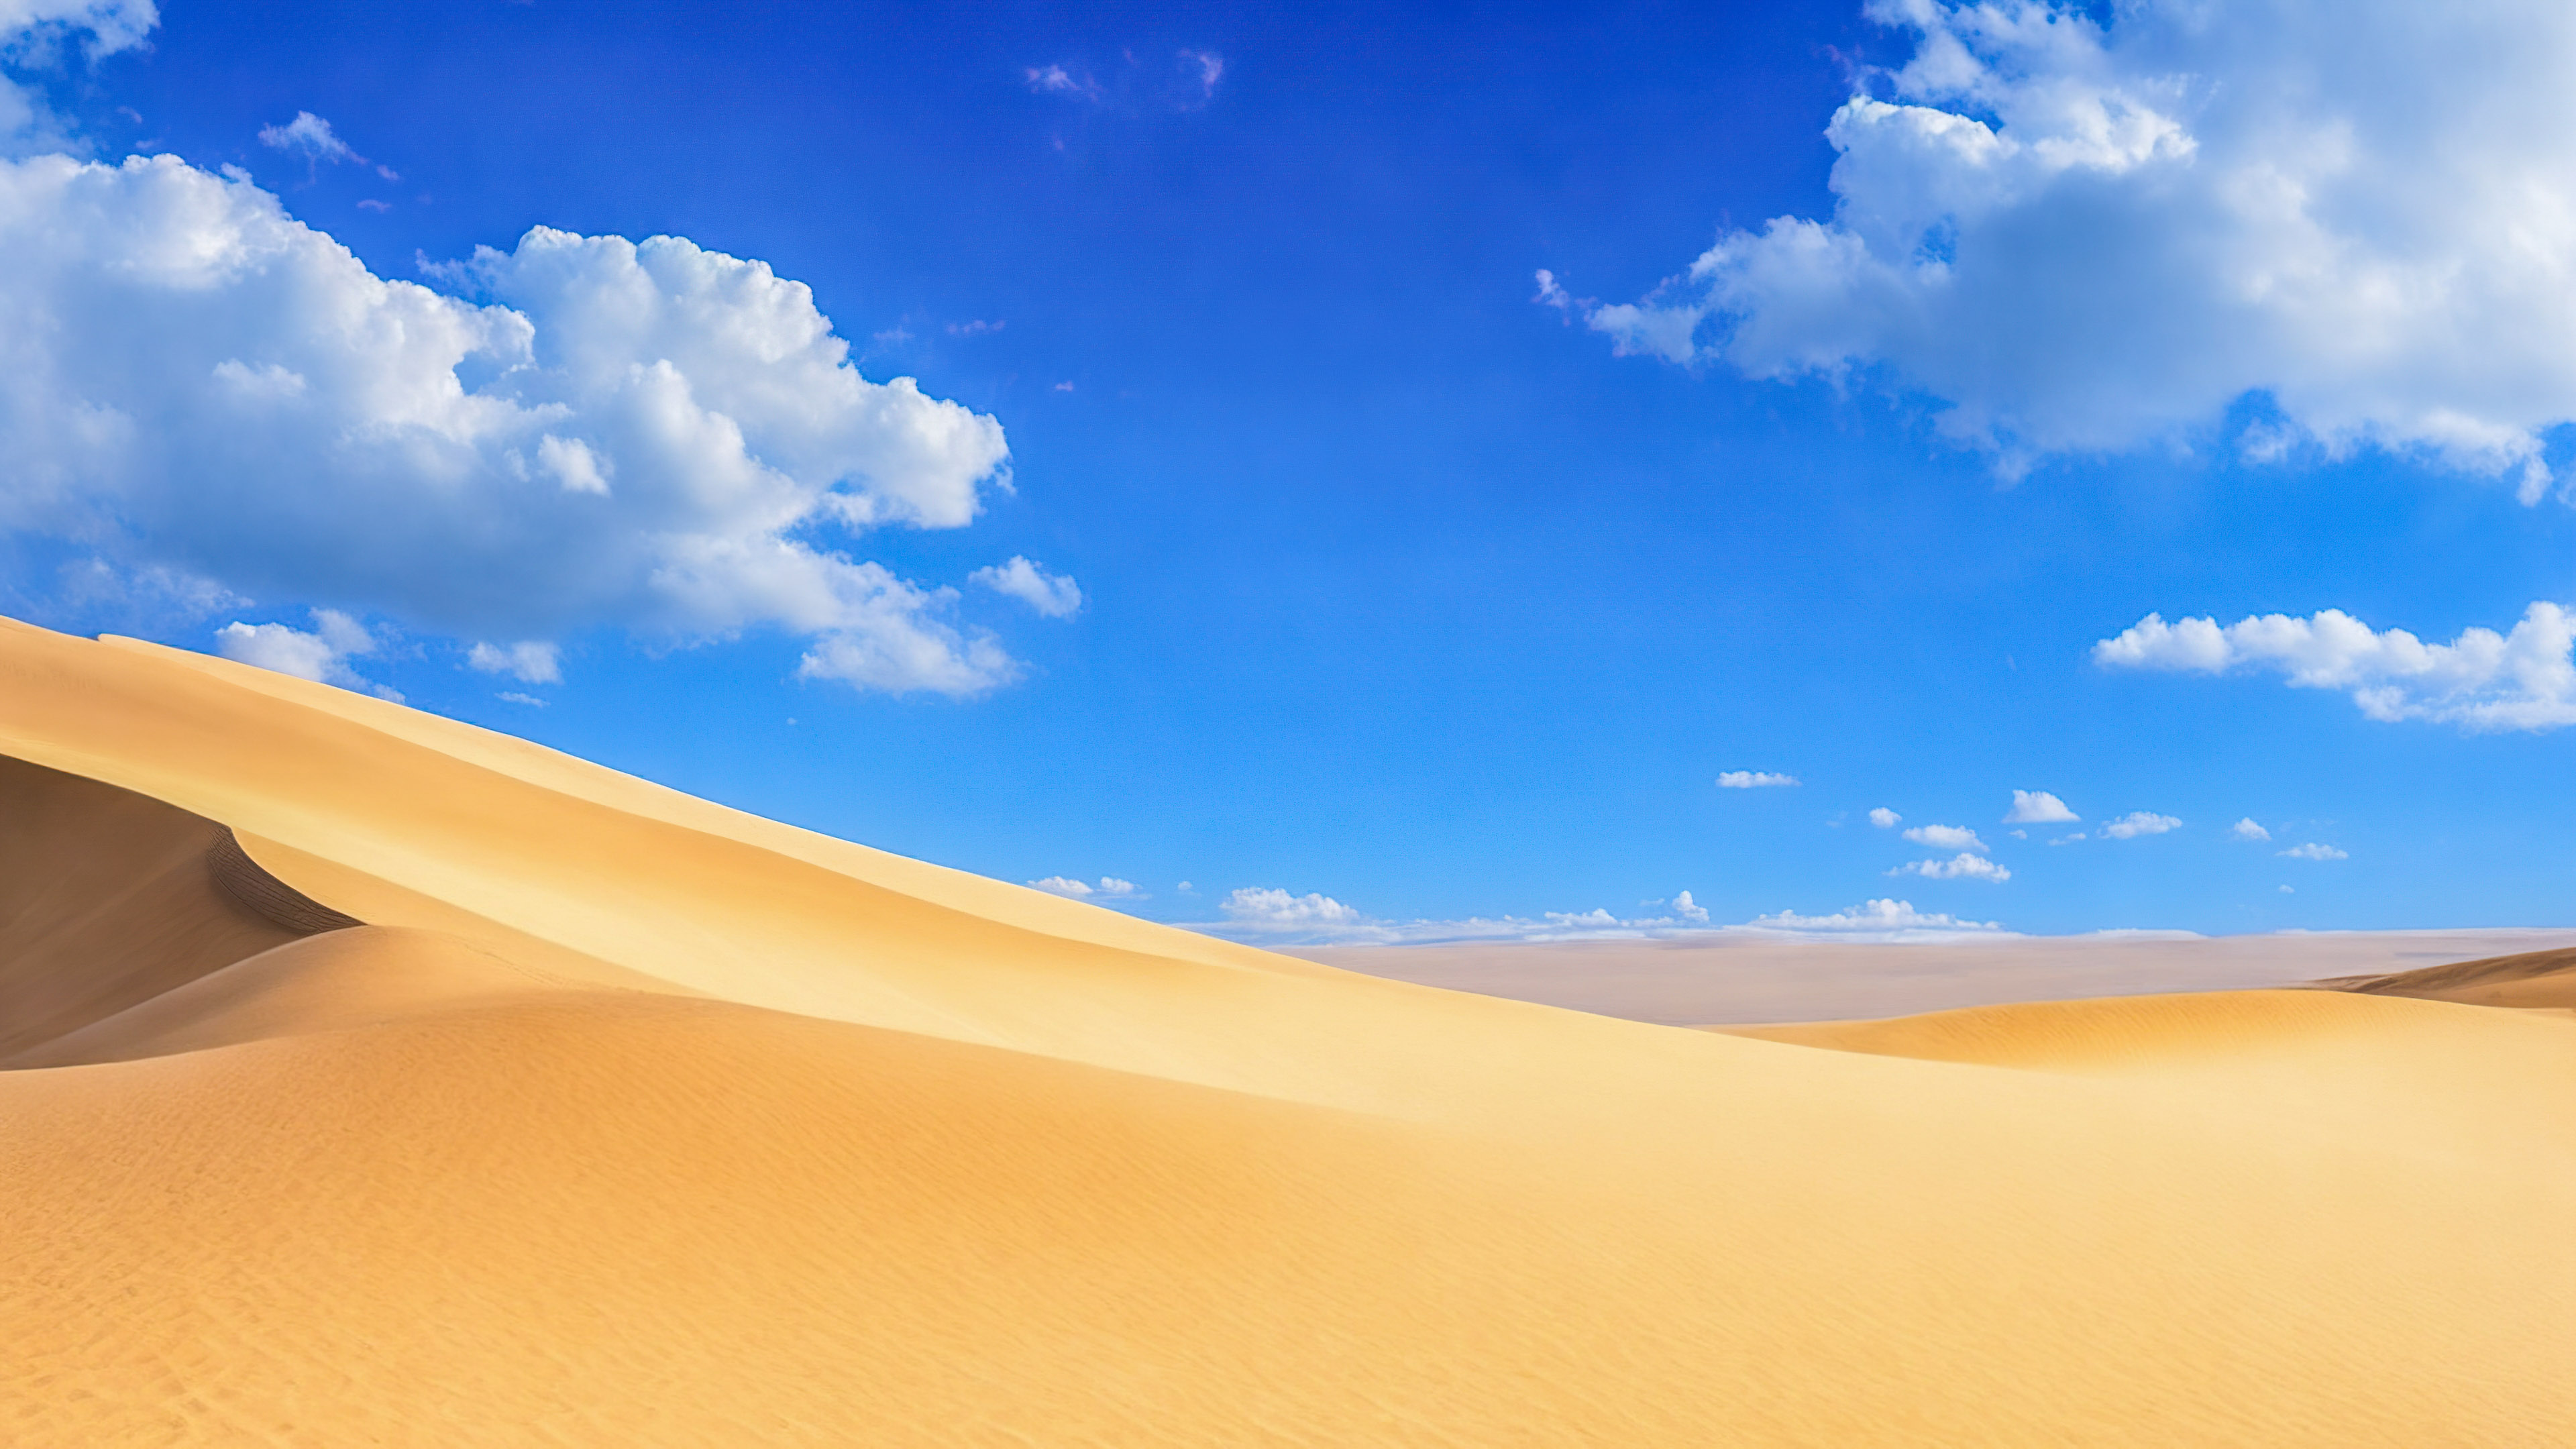 Téléchargez la sérénité de notre fond d'écran de nature magnifique, présentant un paysage désertique serein avec des dunes de sable s'étendant jusqu'à l'horizon sous un vaste ciel bleu.